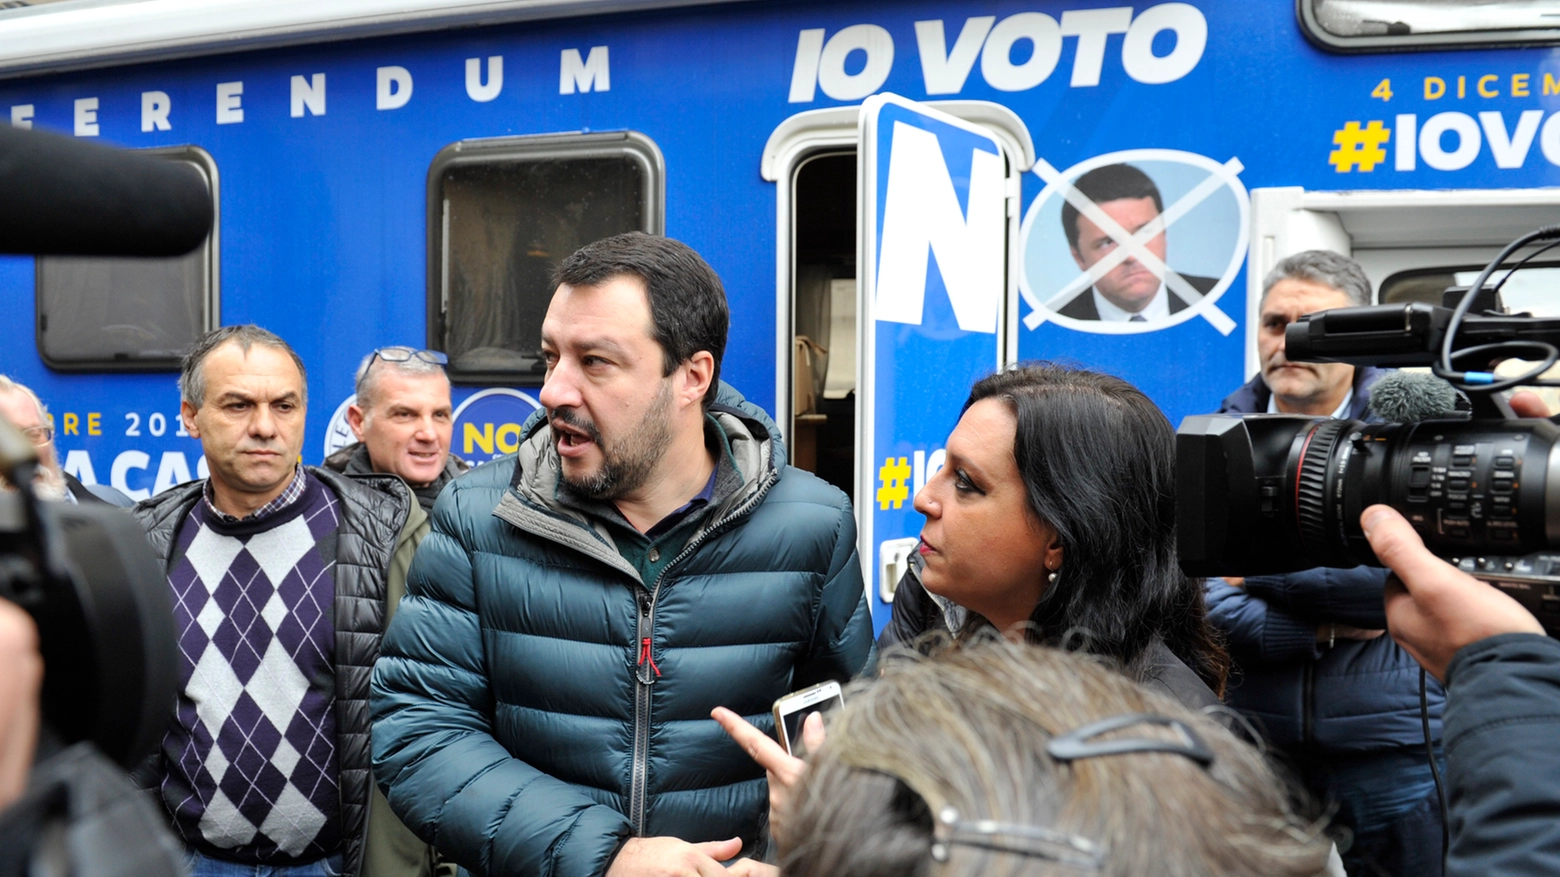 Il leader della Lega Nord ha fatto una breve tappa in città per sostenere il 'no' al referendum del 4 dicembre